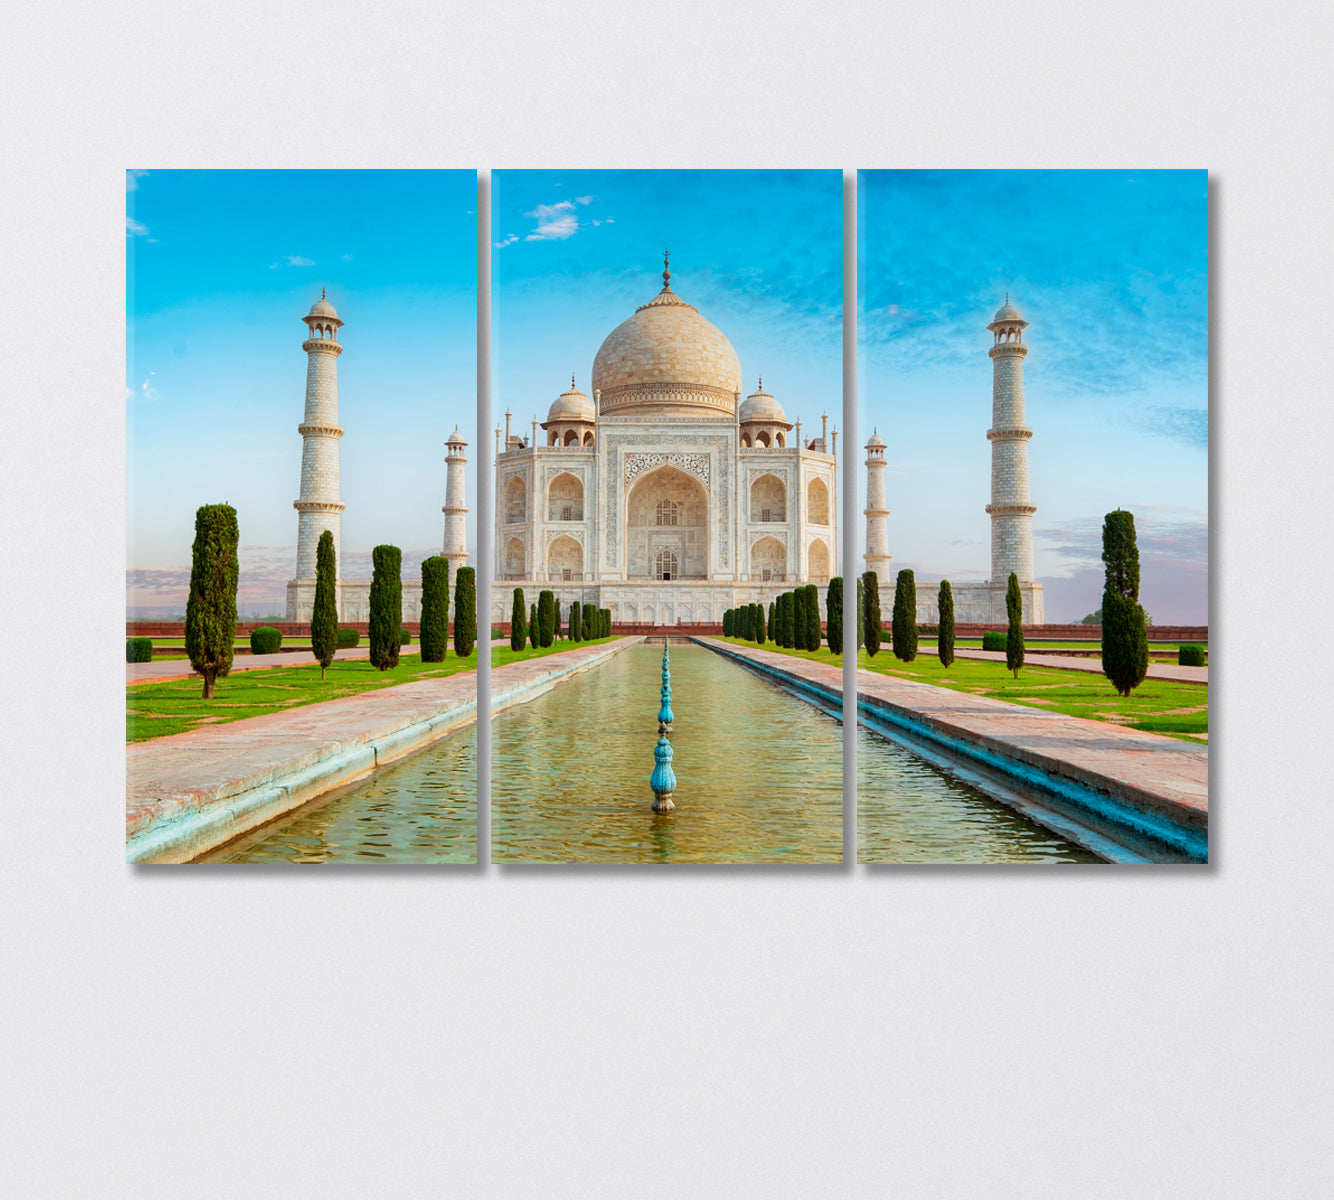 Taj Mahal Mosque India Canvas Print-Canvas Print-CetArt-3 Panels-36x24 inches-CetArt